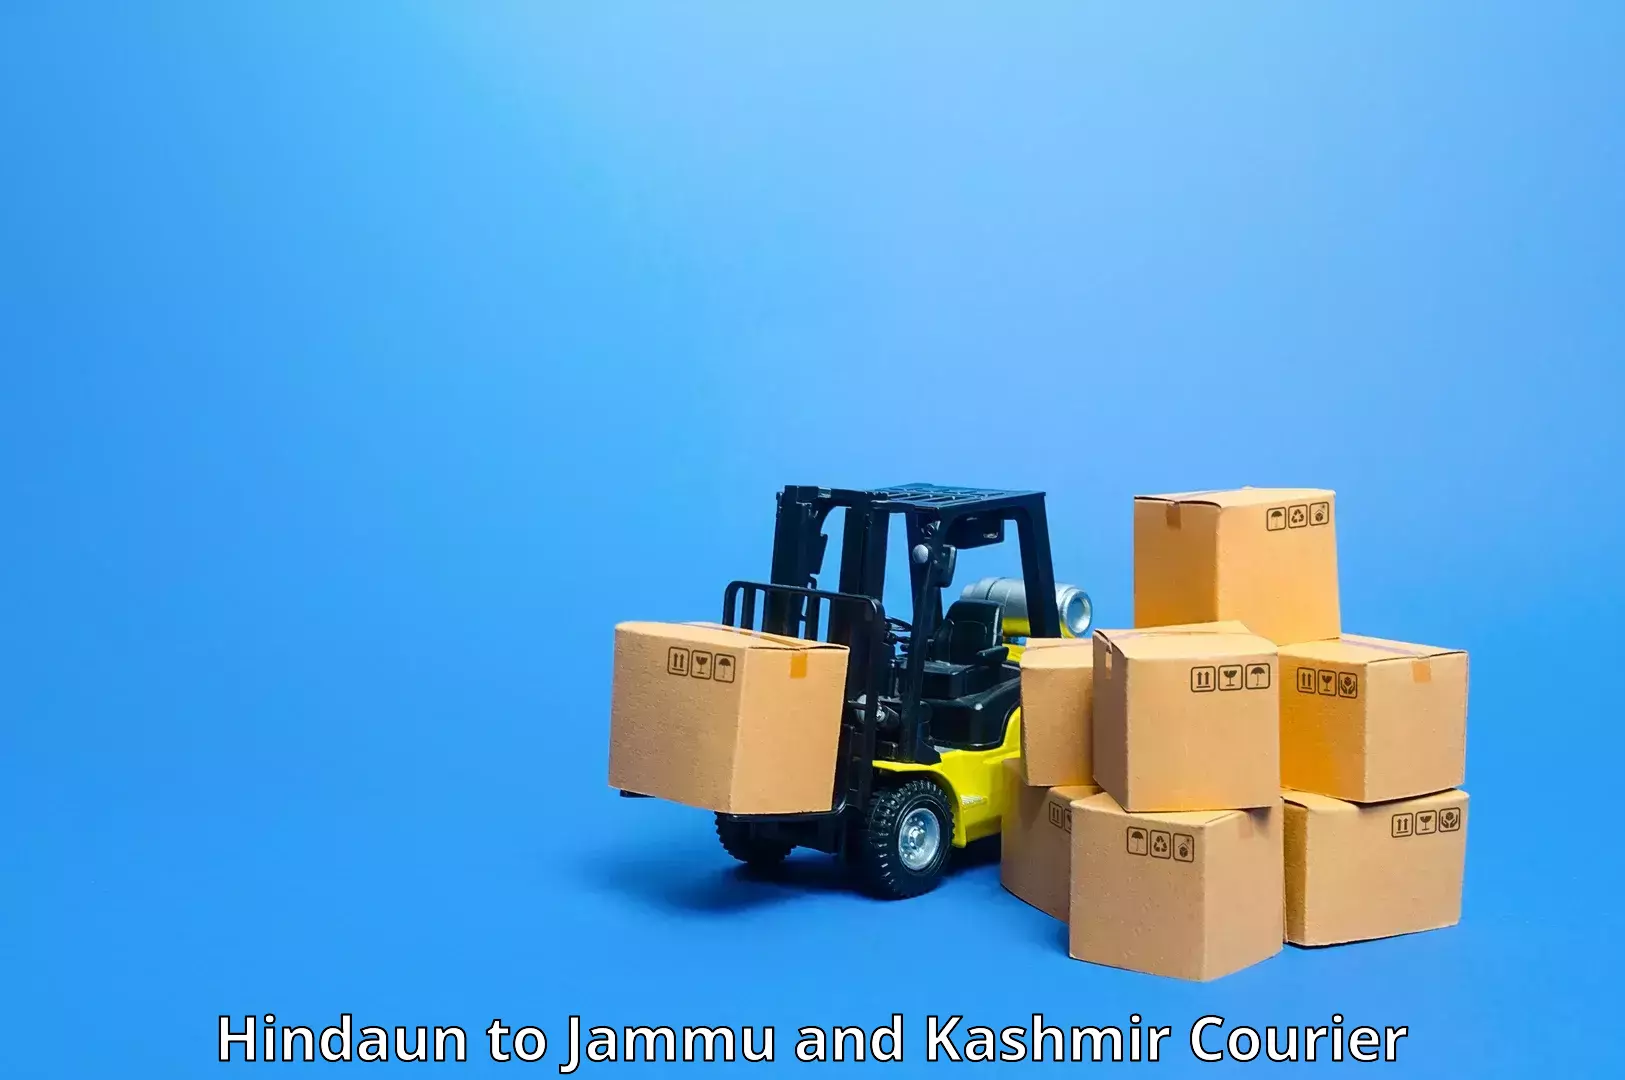 Package delivery network Hindaun to Kargil